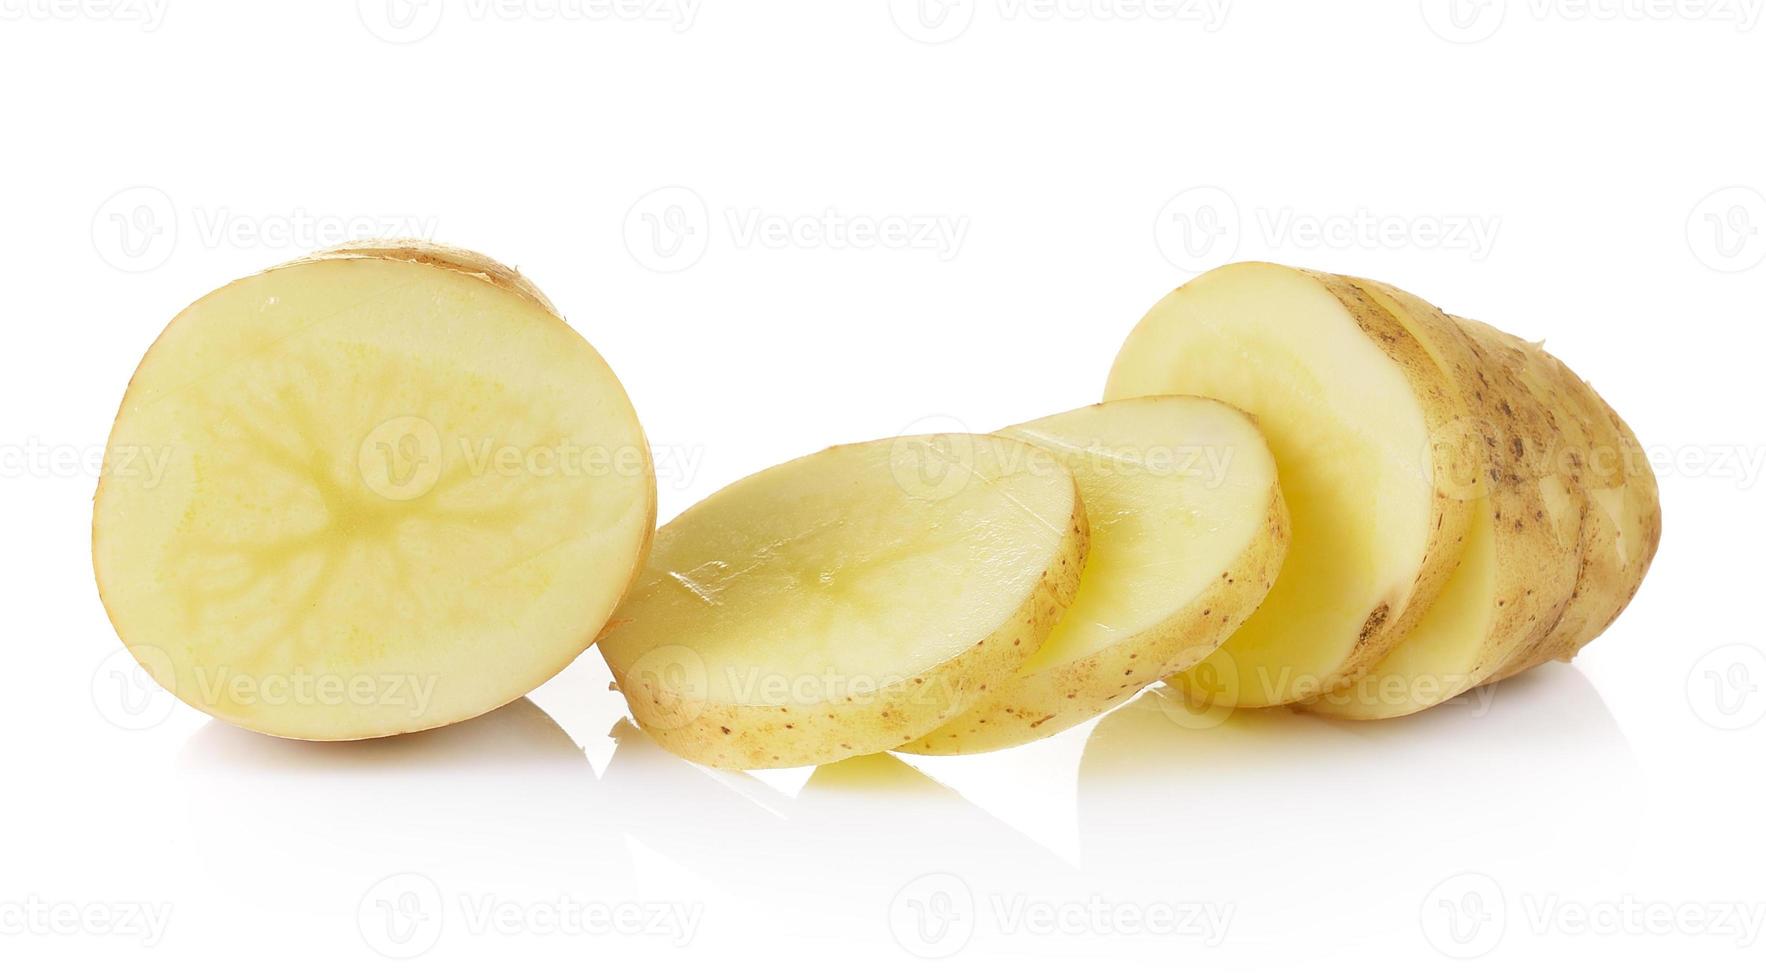 aardappel op een witte achtergrond foto